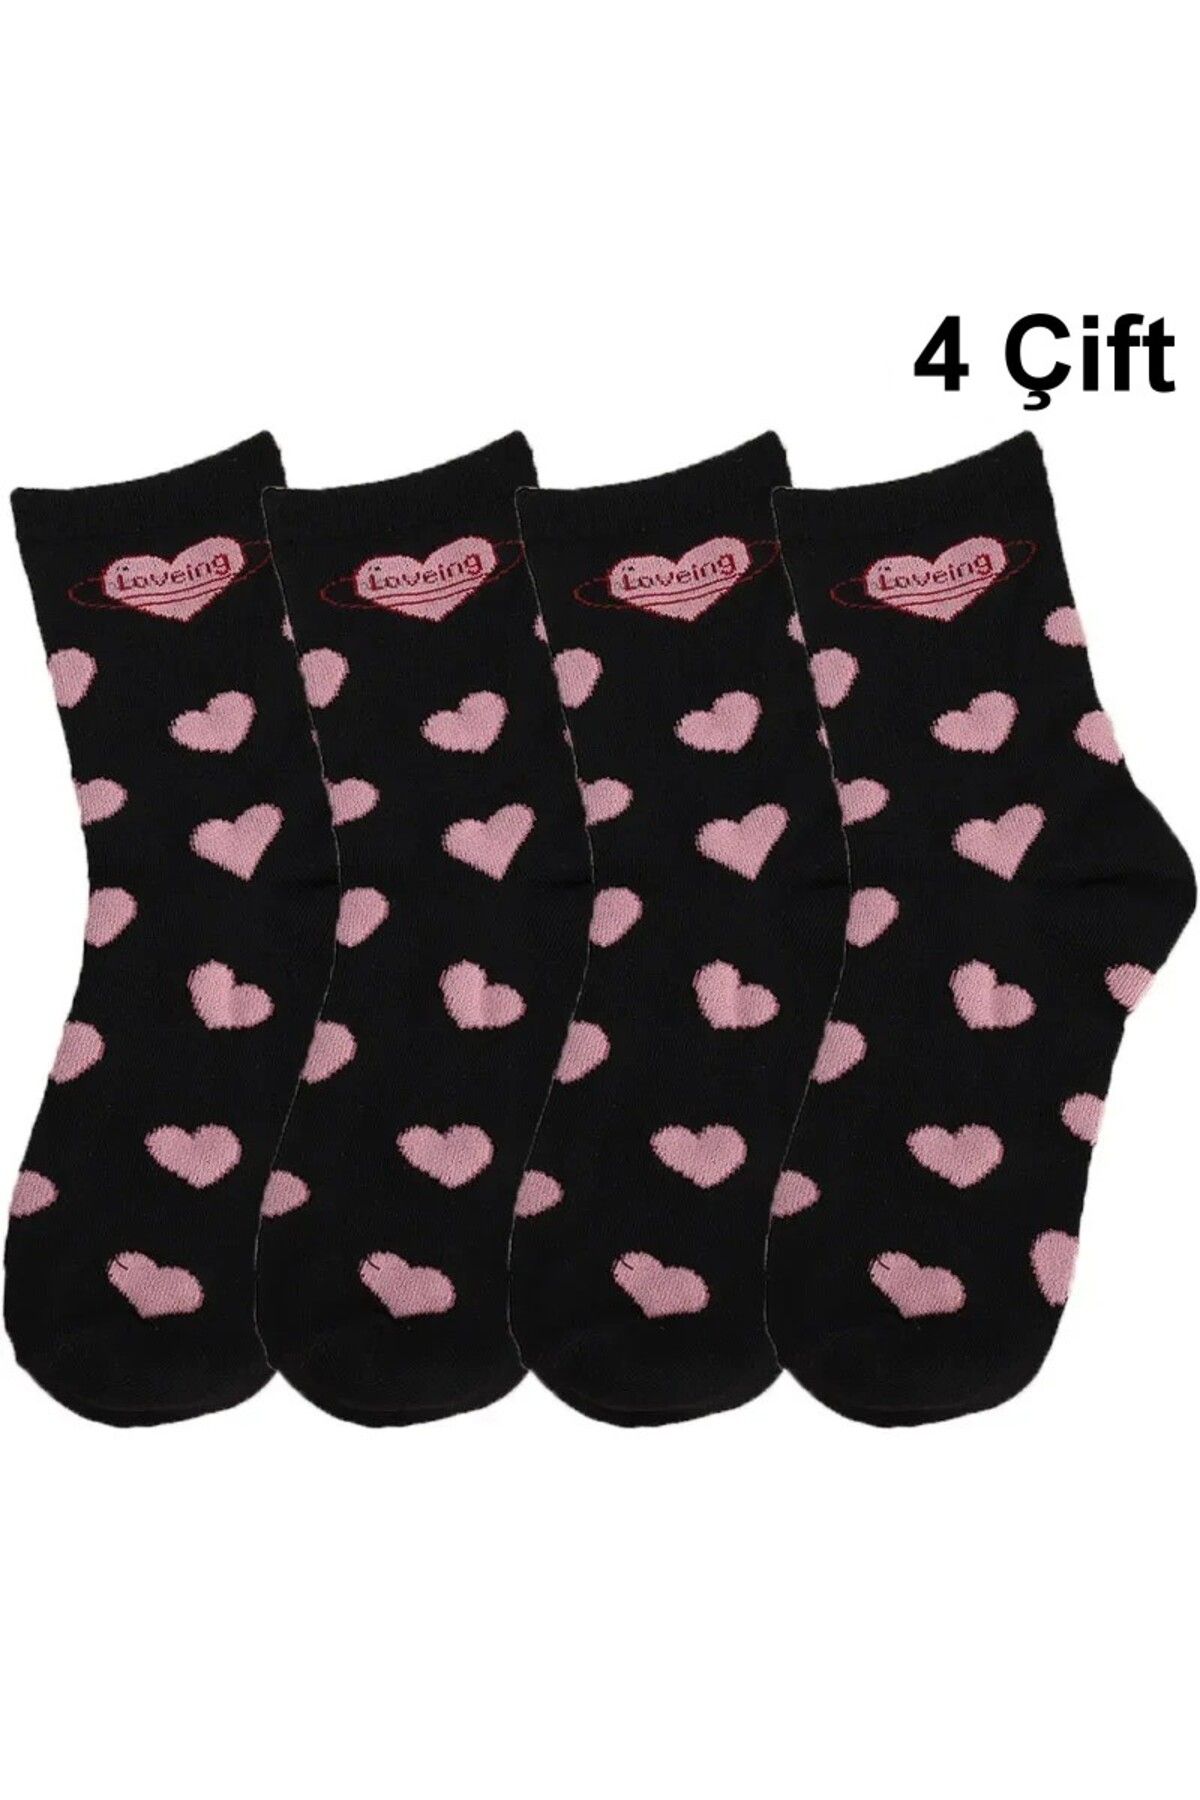 çorapmanya 4 Çift Havlu Kışlık Dikişsiz Kadın Çok Renkli Aşk / Kalp Desenli Kolej Çorap